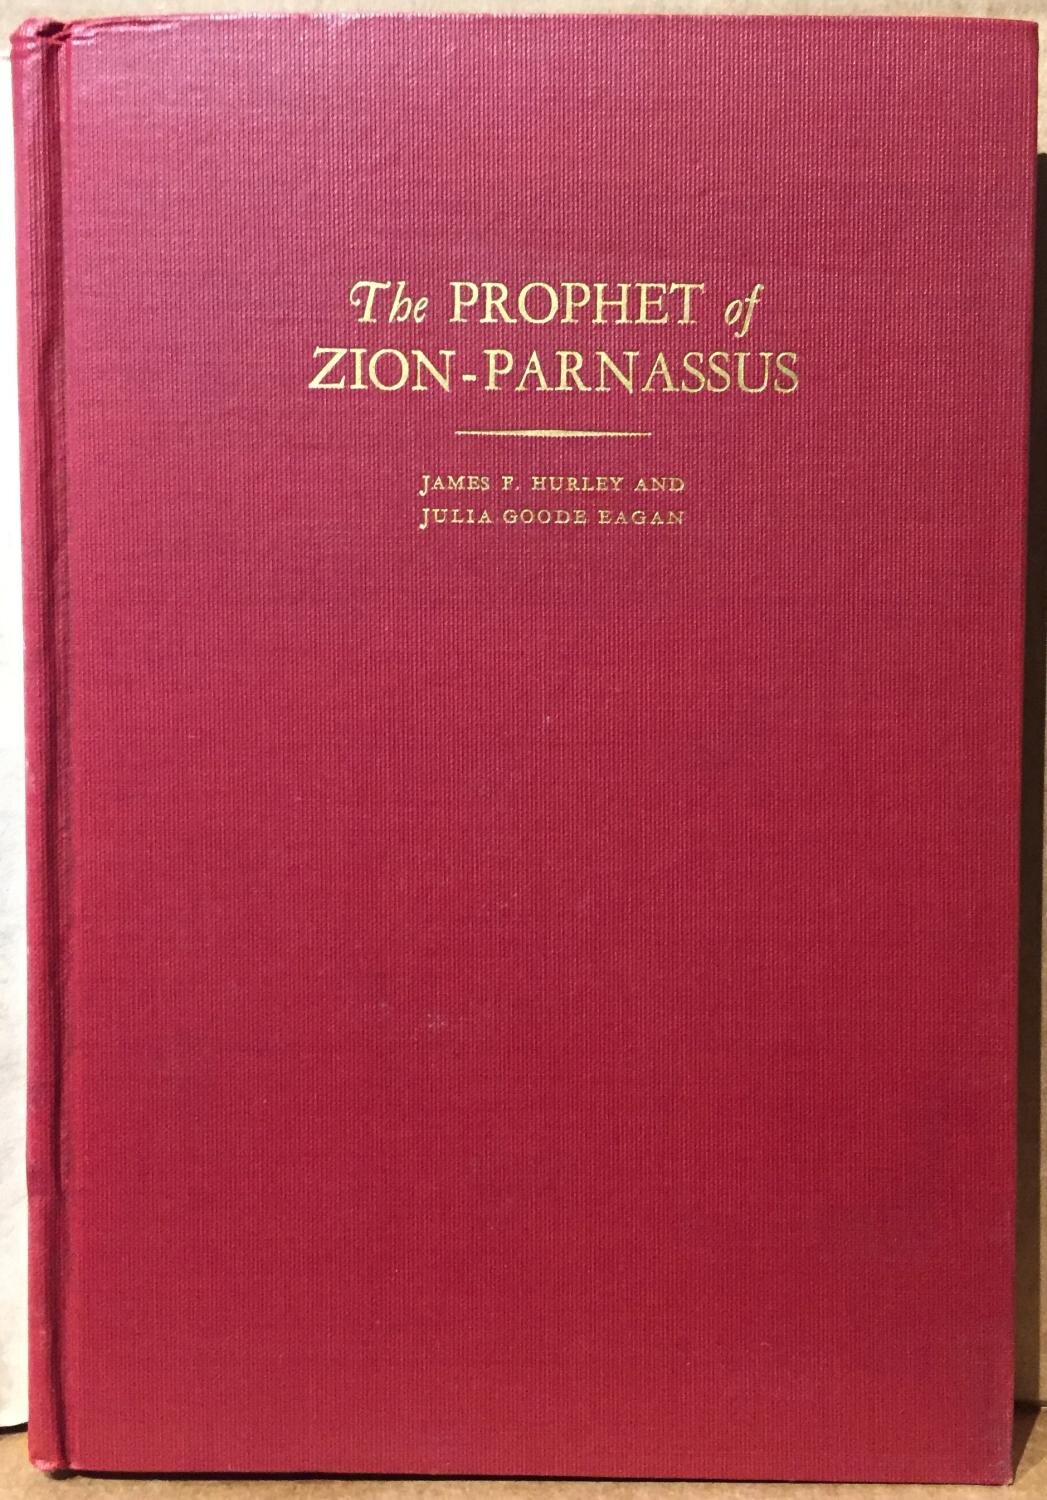 Hurley, James F. and Eagan, Julia, The Prophet of Zion-Parnassus.jpg